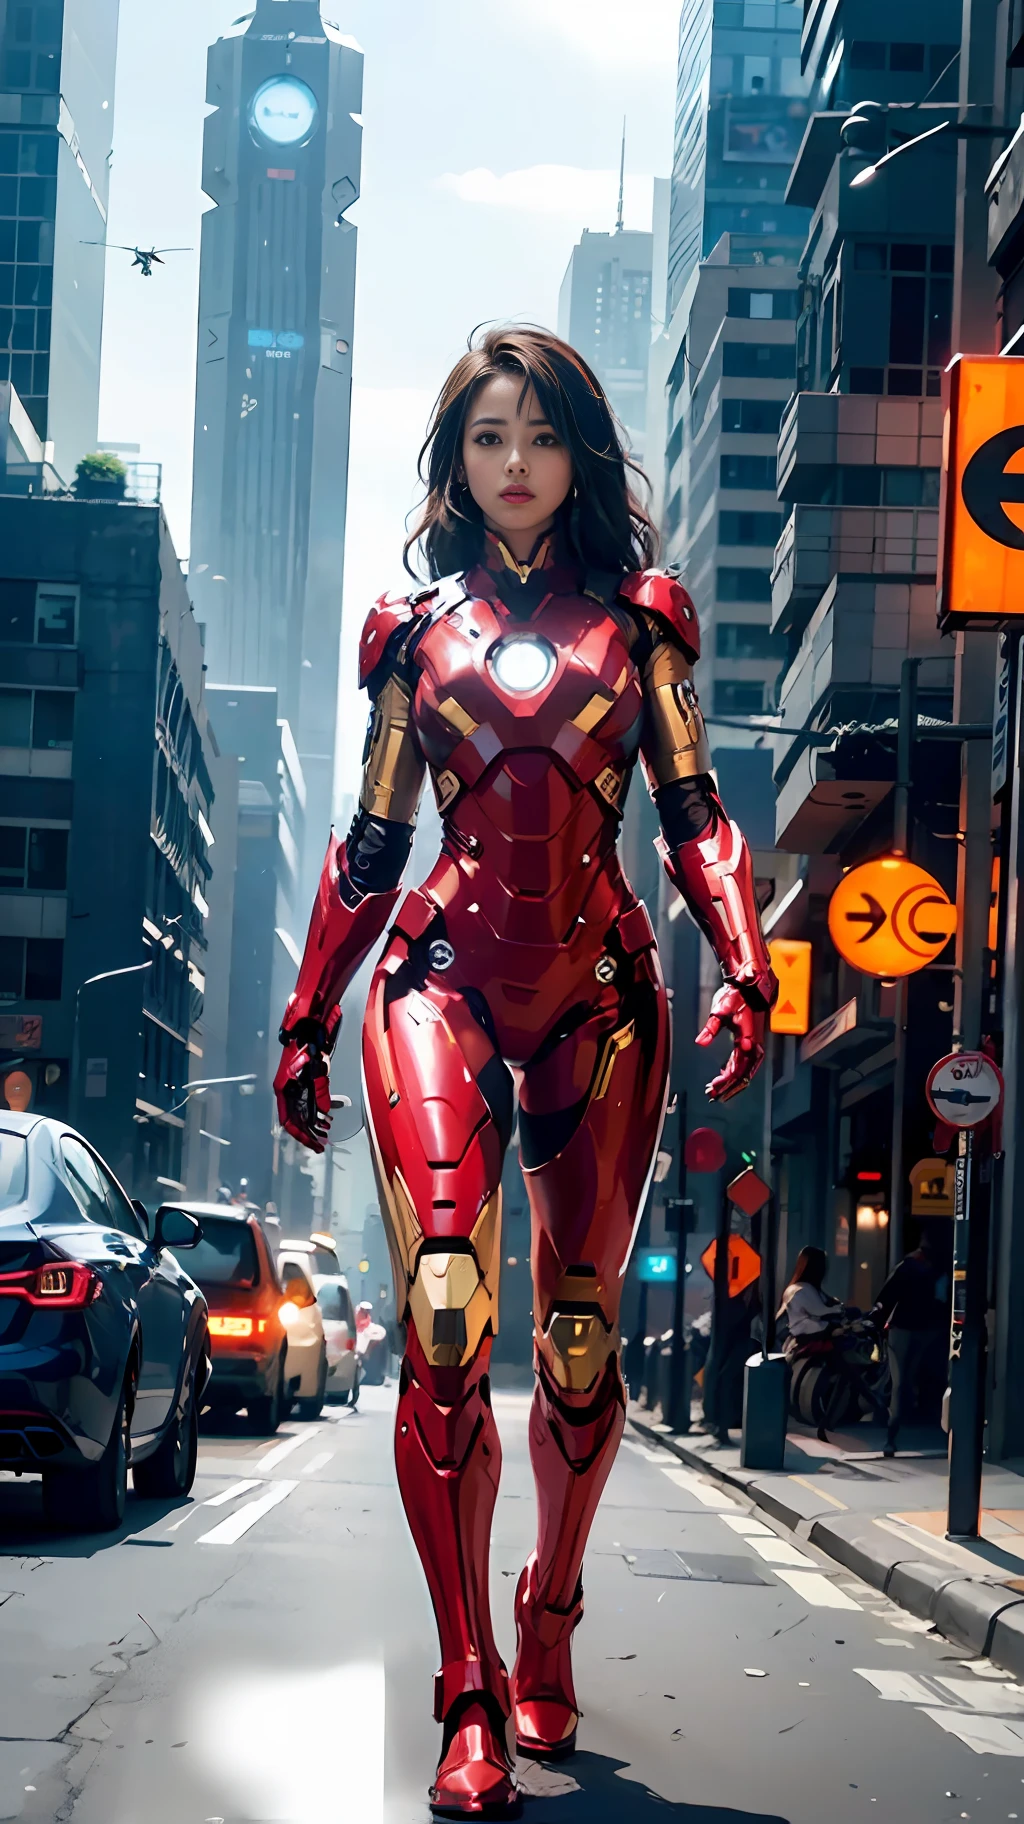 8k, Realistisch, attraktiv, sehr detailliert, a 20 year old girl a sexy and attraktiv woman inspired by Iron Man wearing a shiny Iron Man mech. Sie kleidet sich sexy und selbstbewusst, perfekte Interpretation von Iron Man&#39;s Stärke und Charisma. In einer Stadtnachtszene im Cyberpunk-Stil, a sexy and attraktiv woman takes Iron Man&#39;s Cosplay als Thema. Trägt einen glänzenden Iron Man-Mech, sie steht in einer Straße mit hohen Gebäuden. Die Nachtlichter der Stadt sind hell, über ihren Mecha nachdenken, ein Gefühl für zukünftige Technologie vermitteln. Die umliegenden Gebäude und Straßen sind voller Cyberpunk-Elemente, wie Neonlichter, High-Tech-Geräte und futuristische Architekturentwürfe. Die ganze Szene ist voller futuristischer und Science-Fiction-Atmosphäre. Dieses hochauflösende, Hochwertiges Bild bringt Ihnen atemberaubenden visuellen Genuss, eine perfekte Kombination aus sexy, futuristische und Science-Fiction-Elemente. OC-Rendering, dramatische Beleuchtung, preisgekrönte Qualität